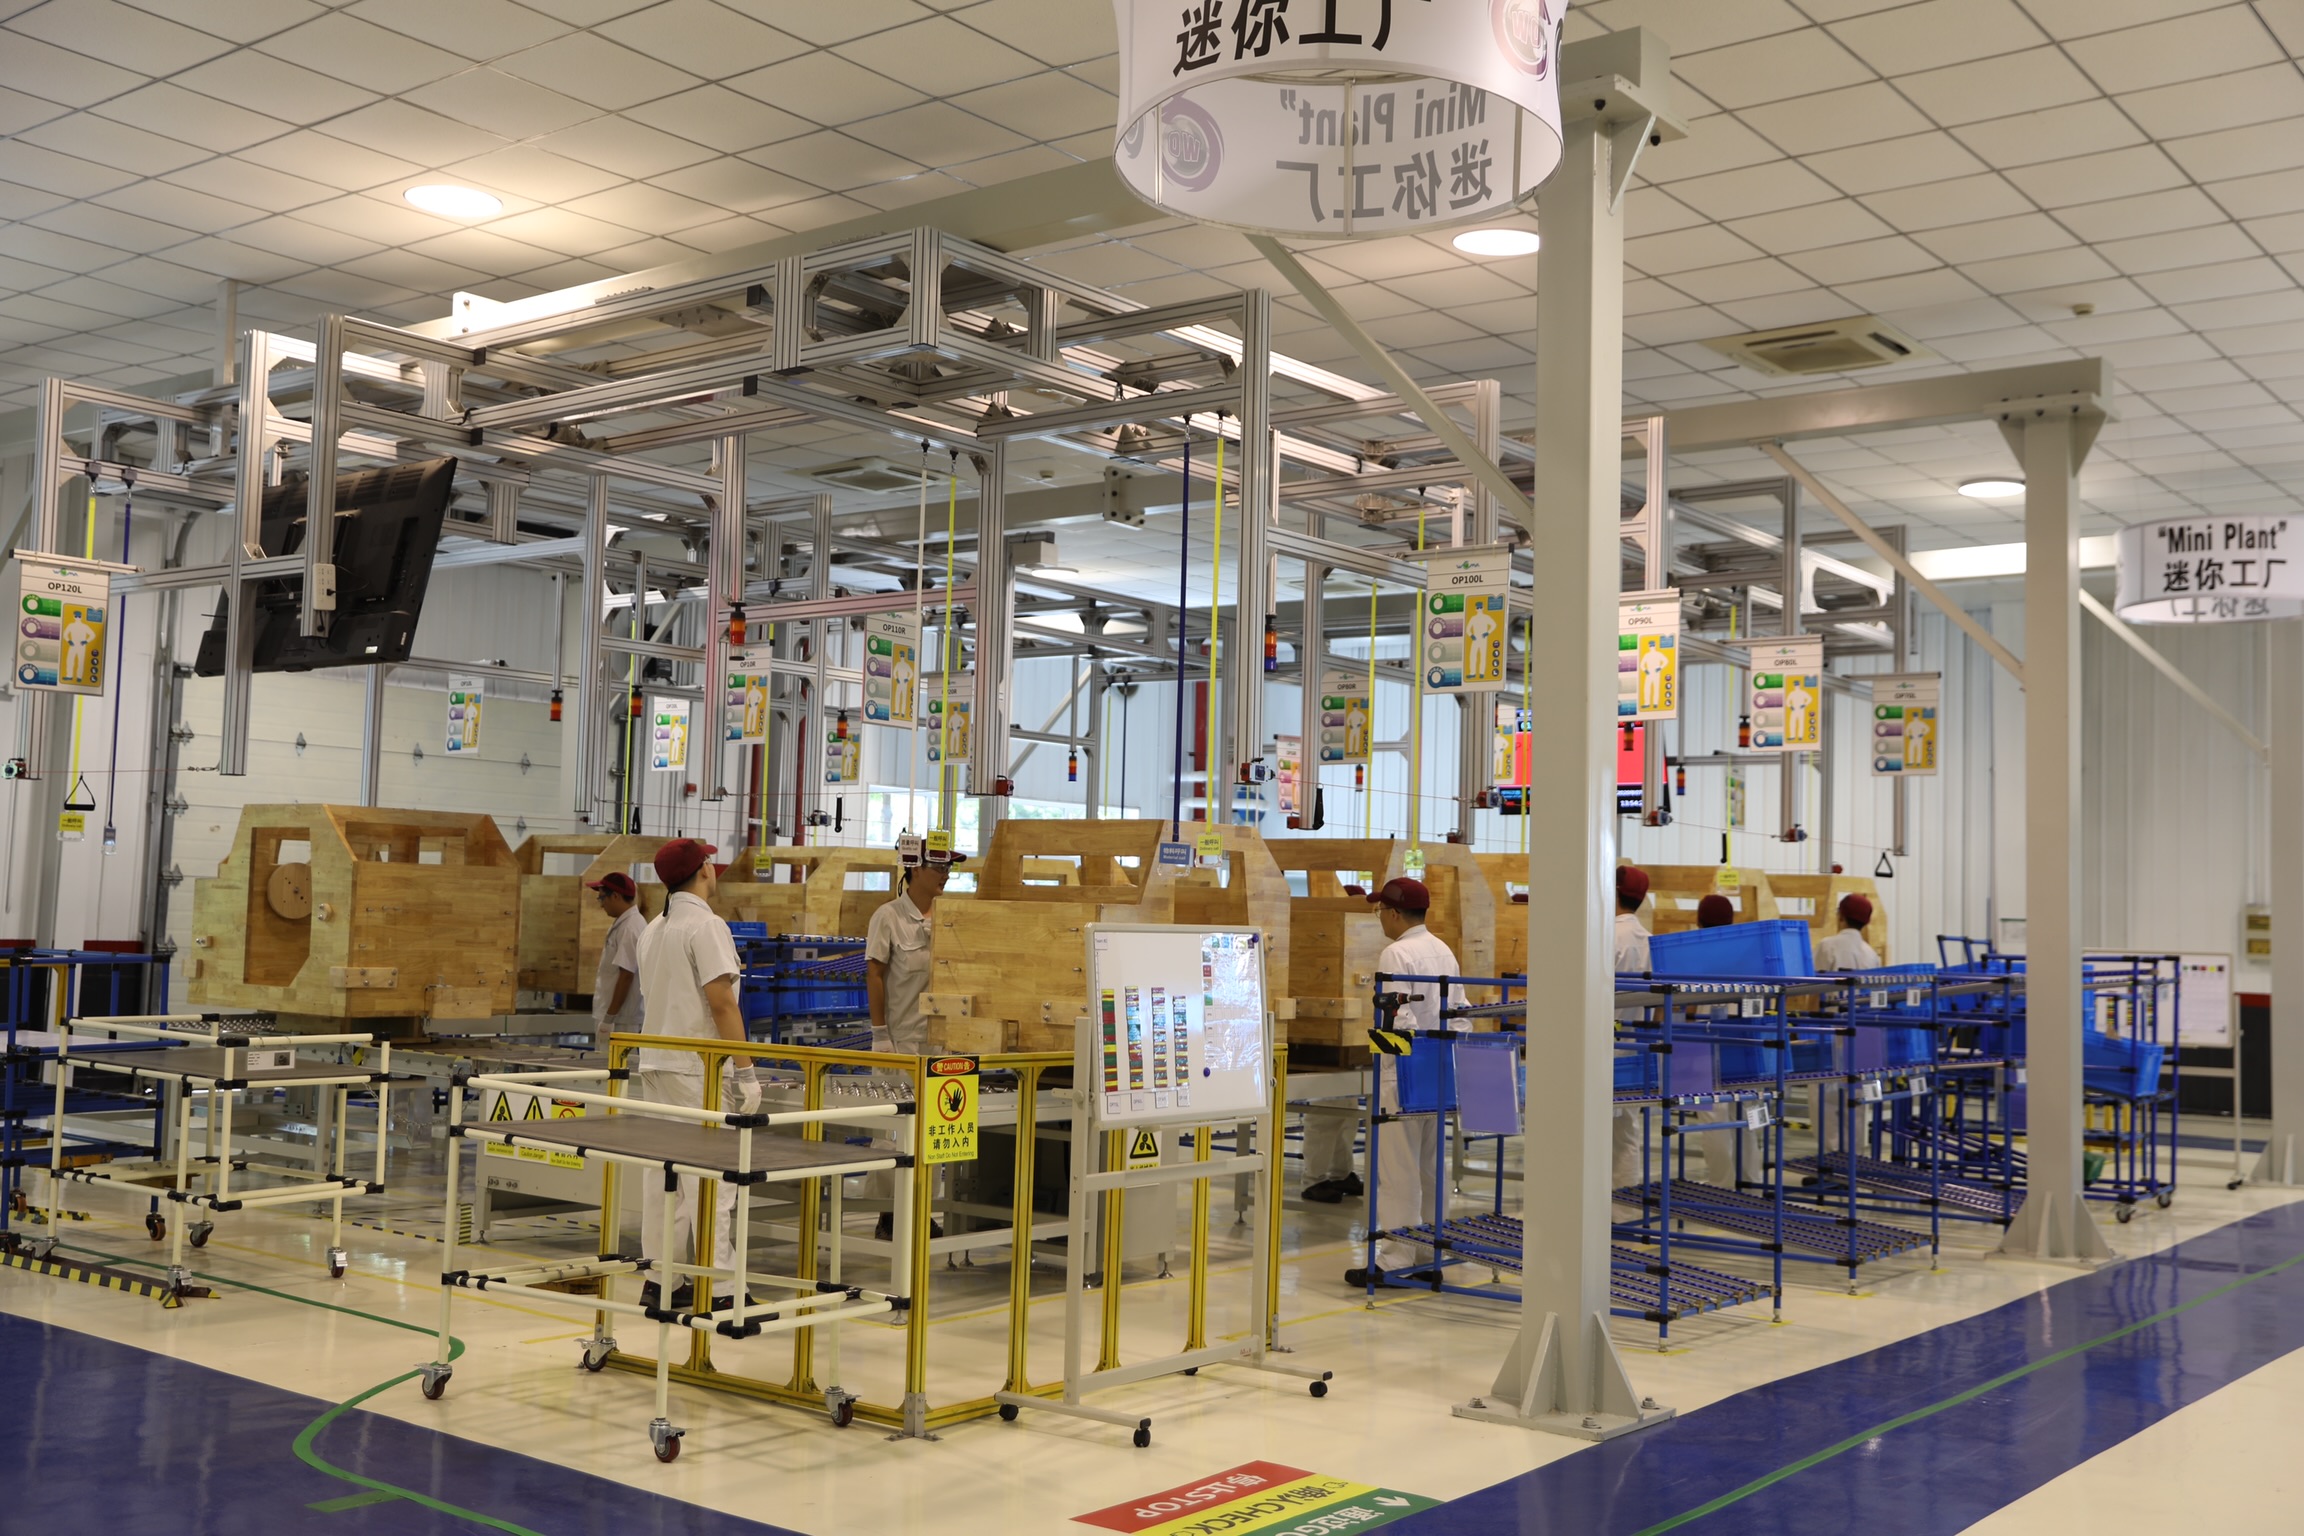 广汽菲克员工正在WCM学院模拟生产线-mini工厂参加实操技能提升培训。均为长沙晚报通讯员王龙 摄